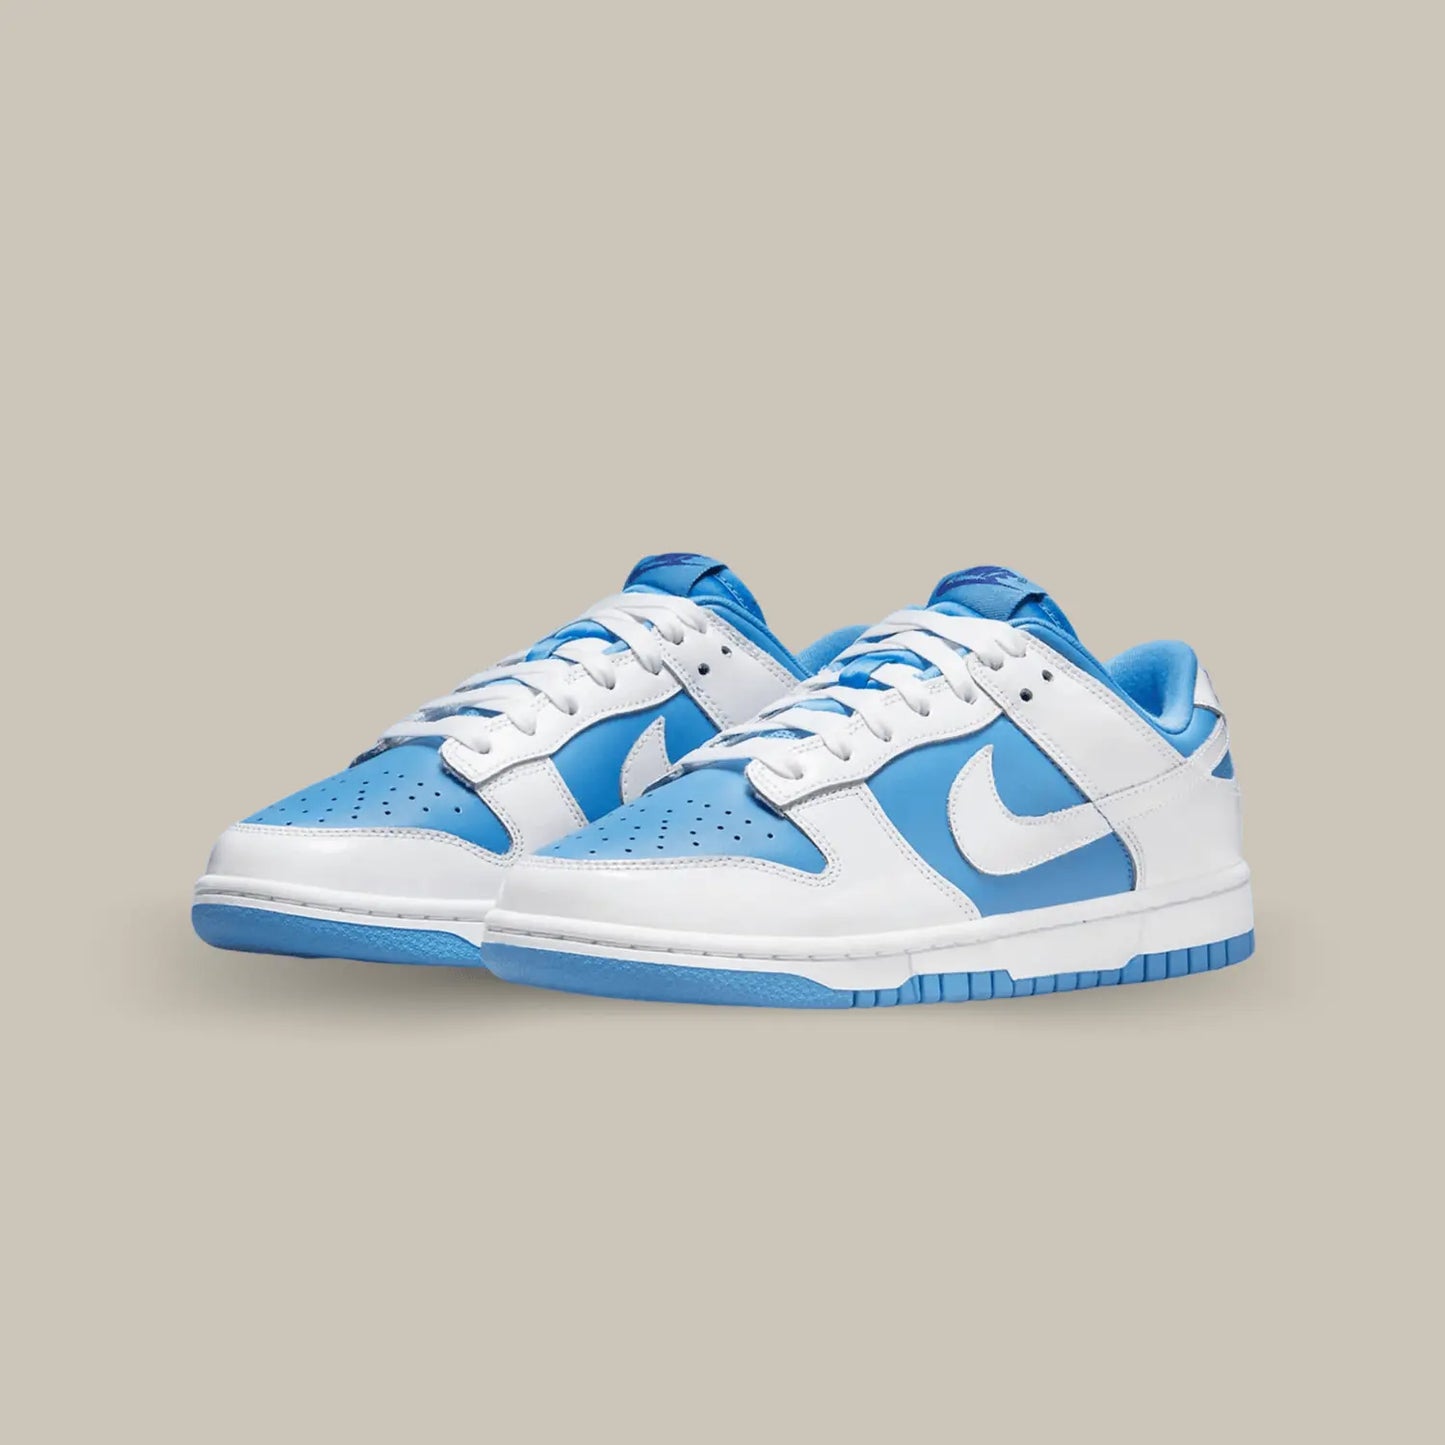 La Nike Dunk Low Reverse UNC puise son inspiration dans le monde universitaire américain. Elle affiche une base en cuir bleu ciel accompagnée de superpositions en cuir blanc, les deux couleurs représentantes de UNC, l’Université de Caroline du Nord à Chapel Hill.